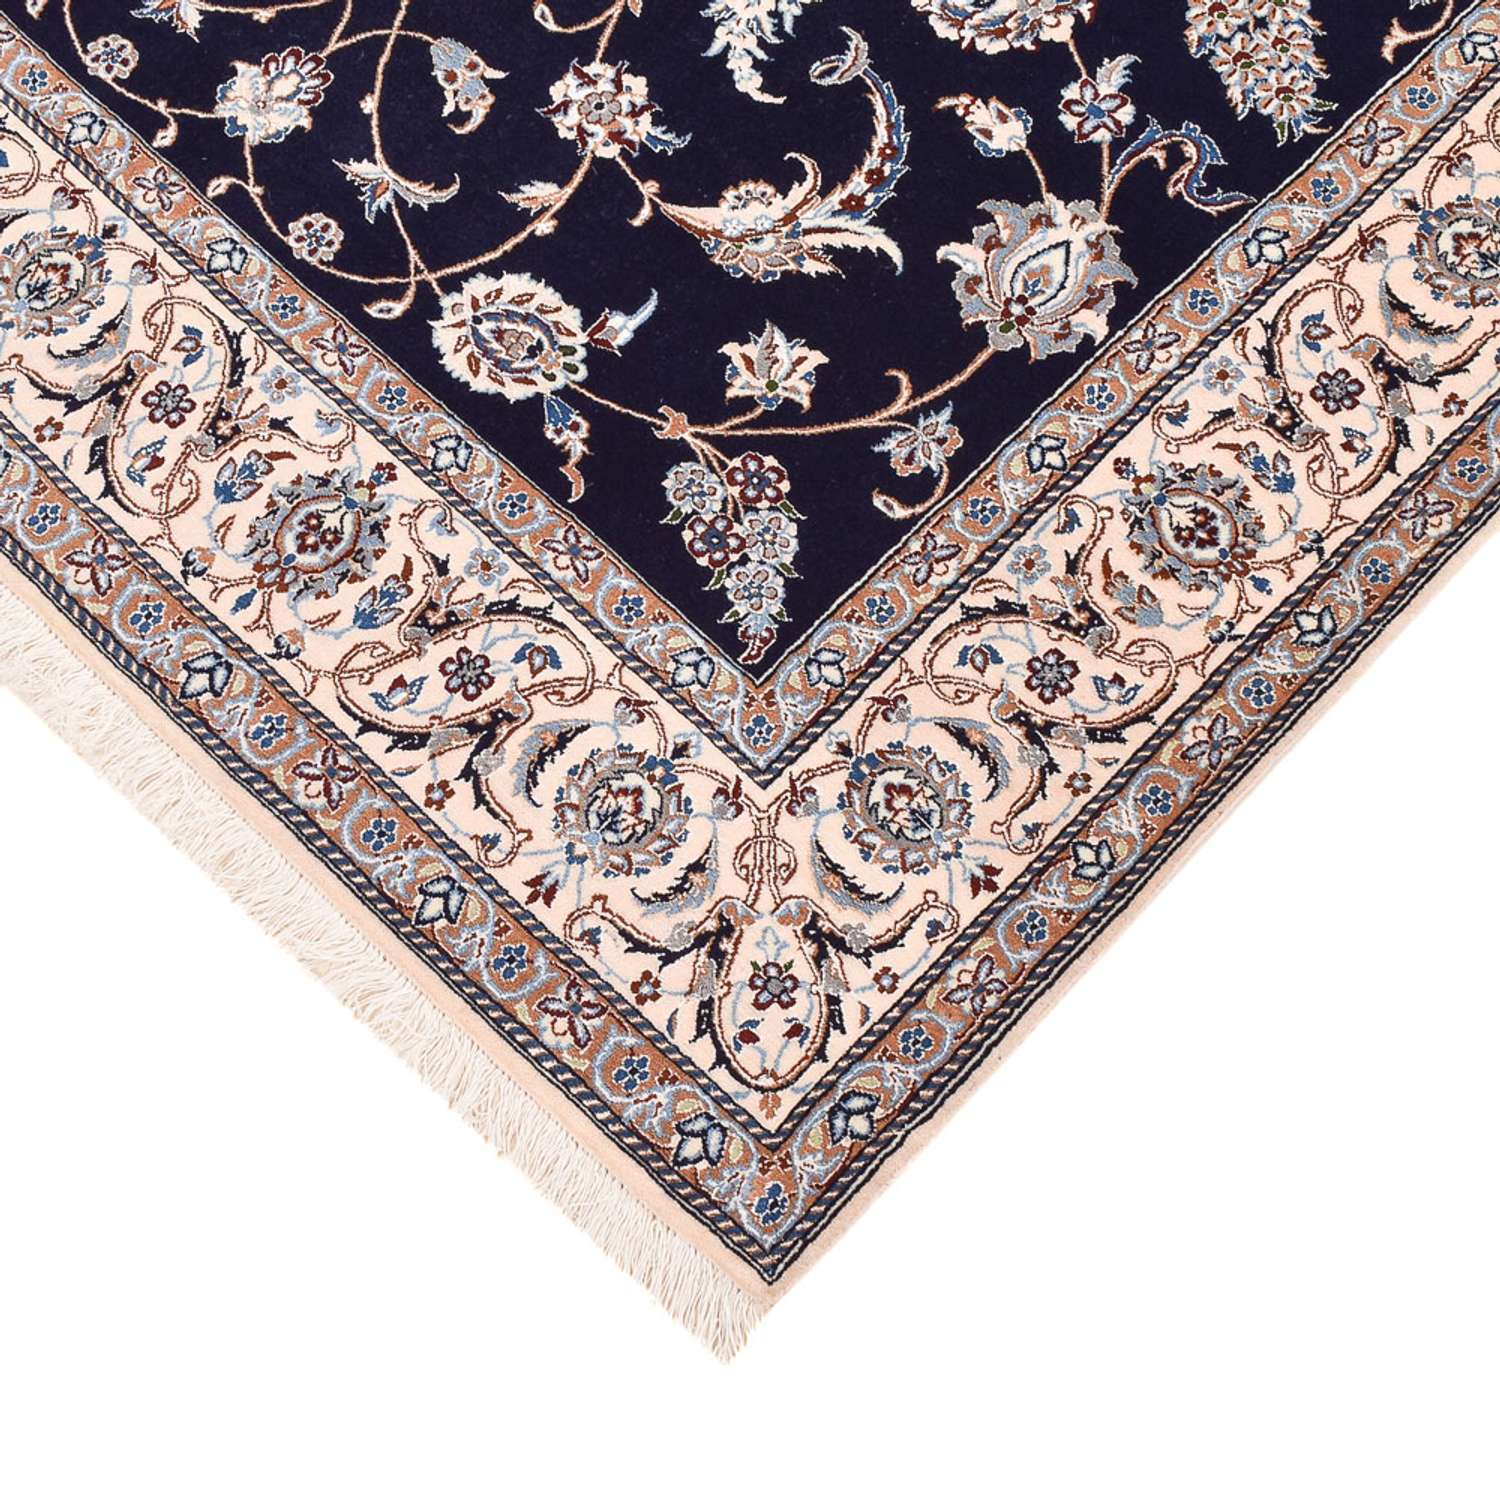 Tapis persan - Nain - Premium - 197 x 130 cm - bleu foncé